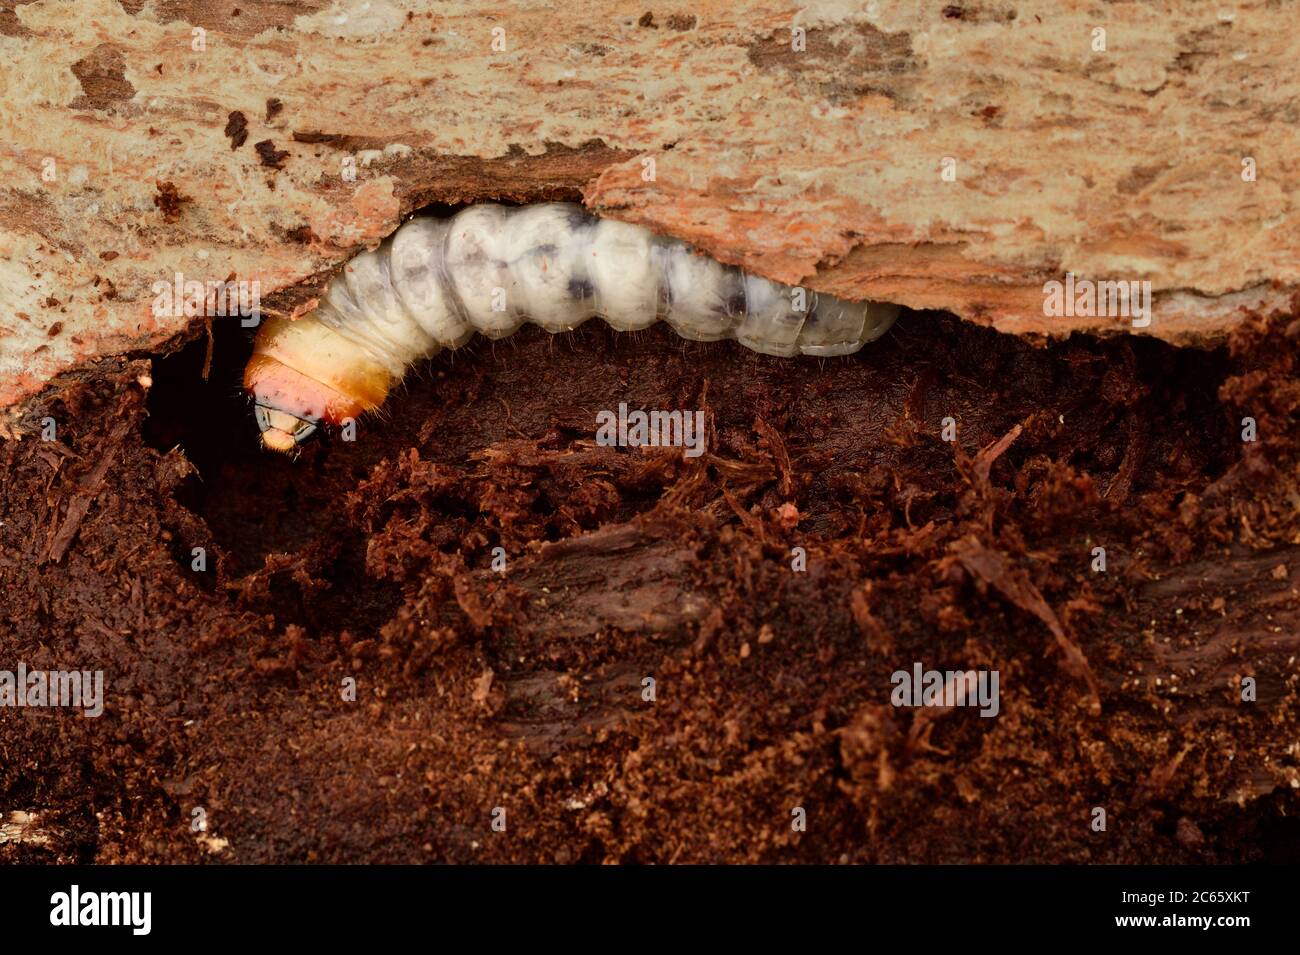 Les larves du Pinchbuck, du Longhorn Beetle (Rhagium sycophanta) mangent des allées larges et plates sous l'écorce des souches de chêne, des troncs de fellen ou des chênes endommagés, Kiel, Allemagne Banque D'Images